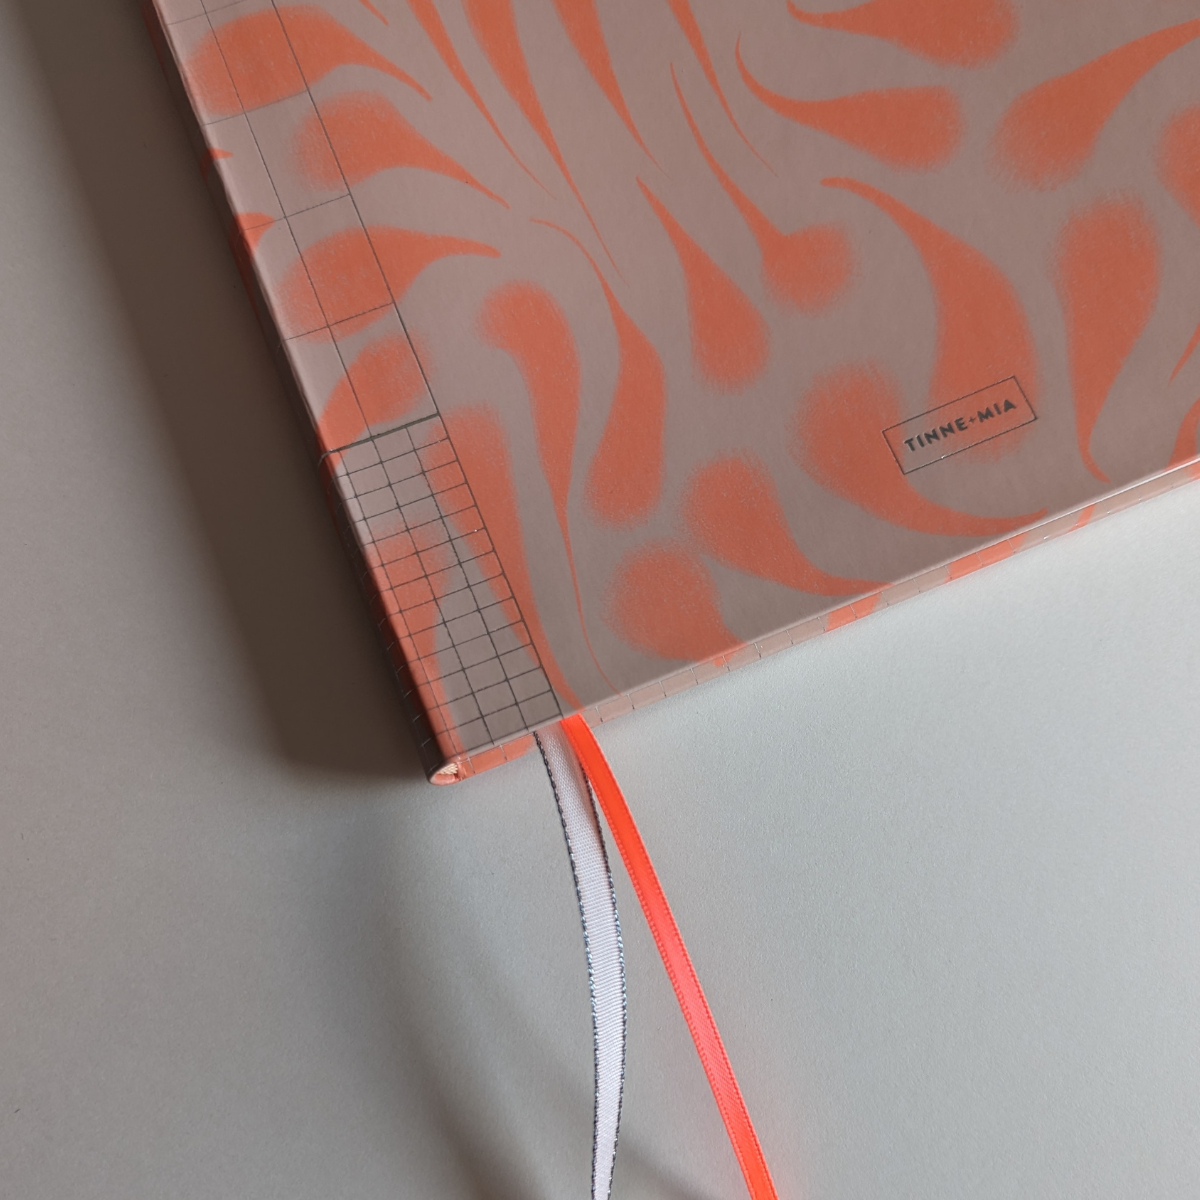 Ce cahier élégant est orné d'un design évoquant les mouvements fluides des vagues. Les détails argentés ajoutent une touche de sophistication à la couverture, tandis que les rubans rehaussent le charme subtil du cahier.